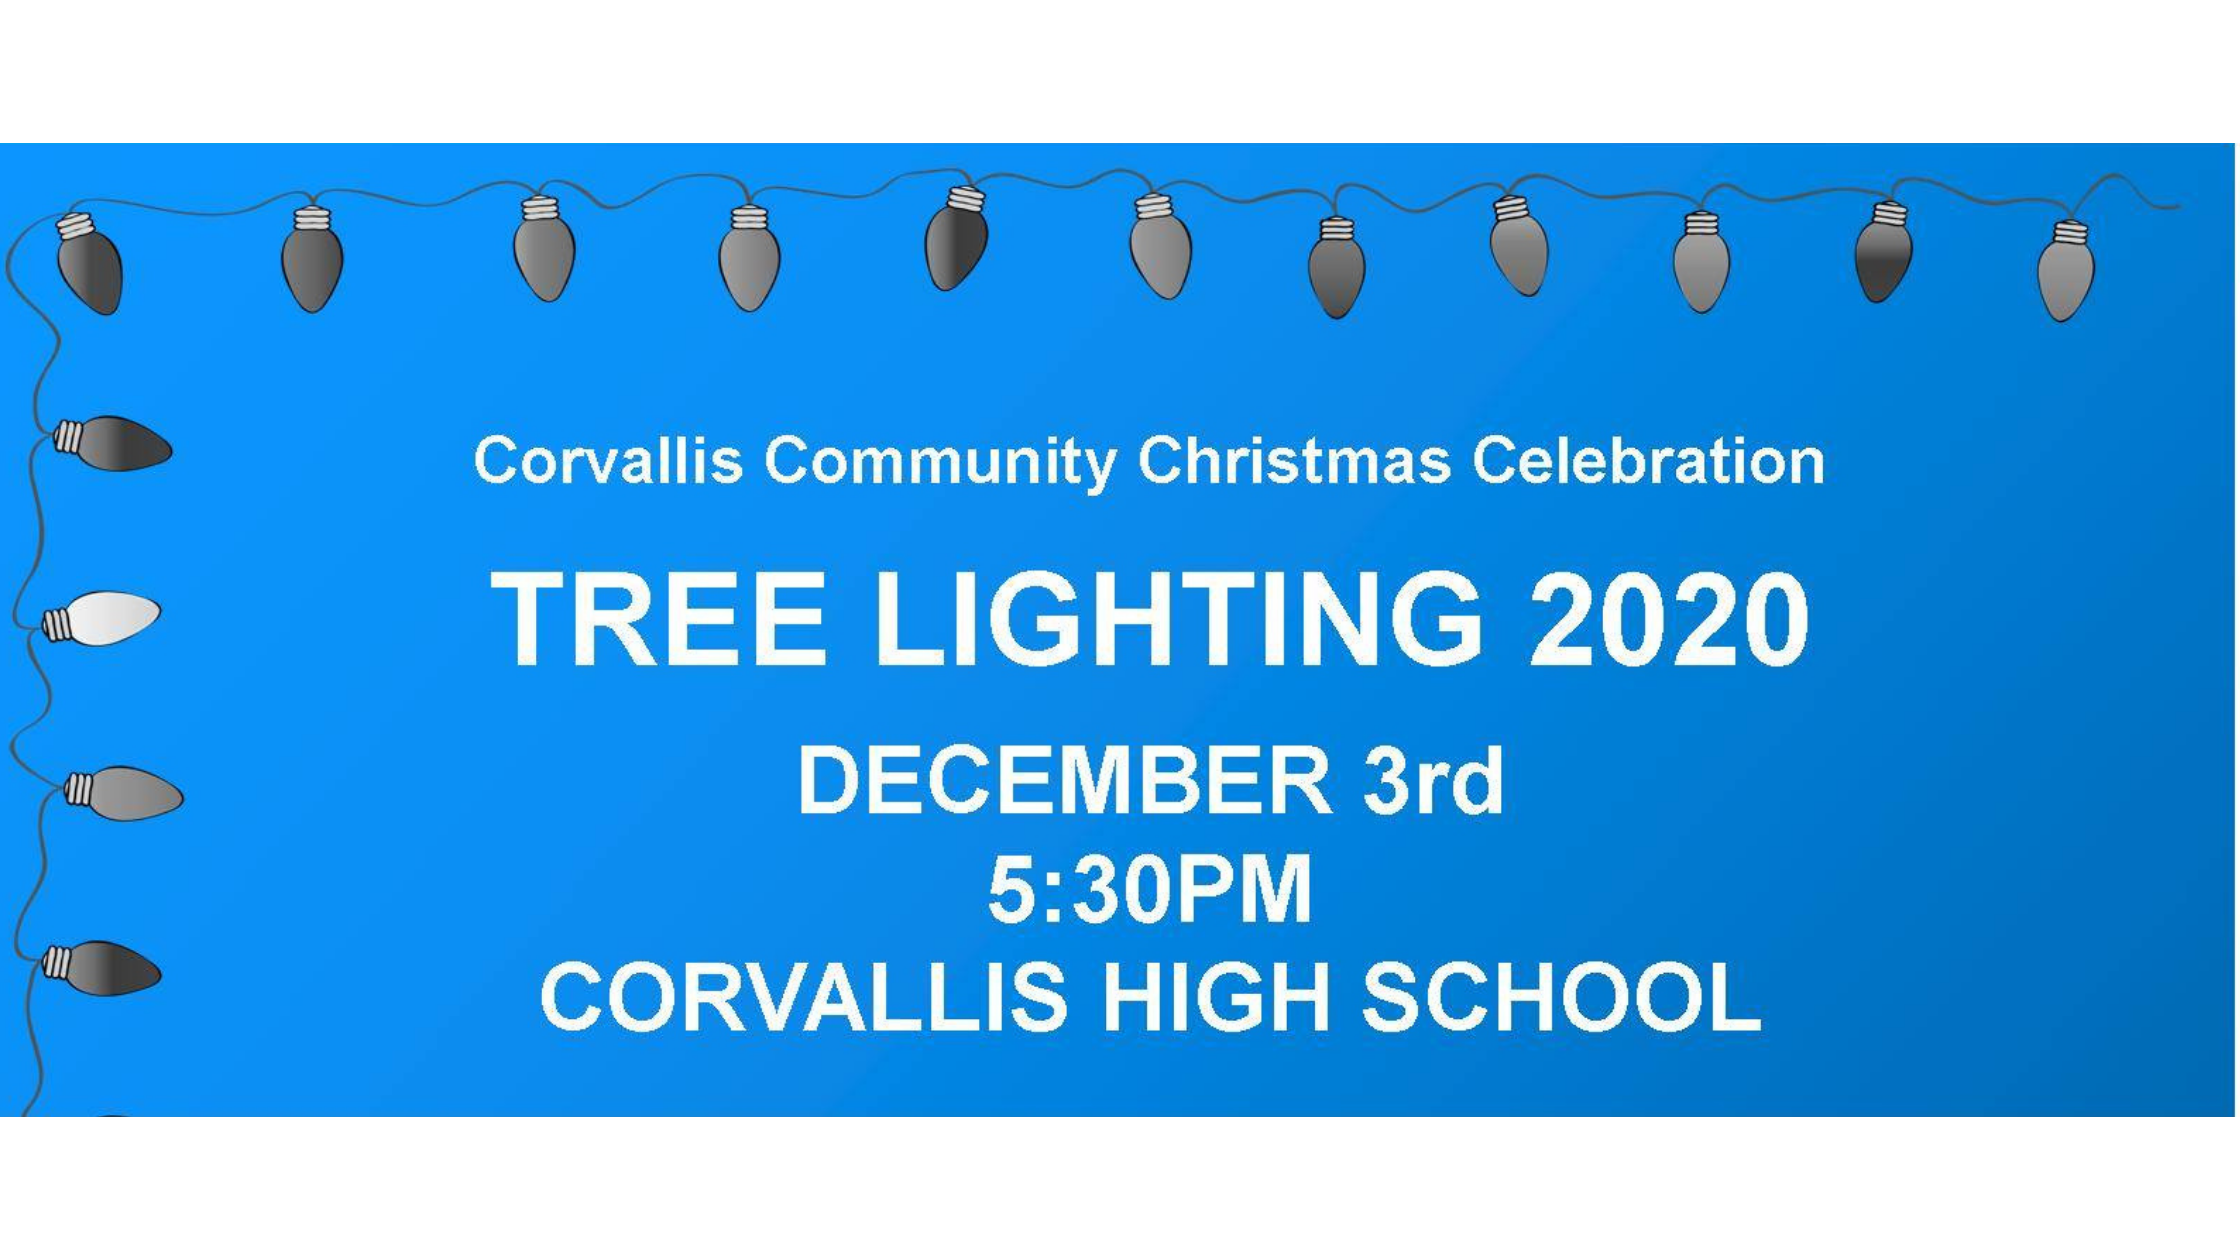 Tree Lighting 2020